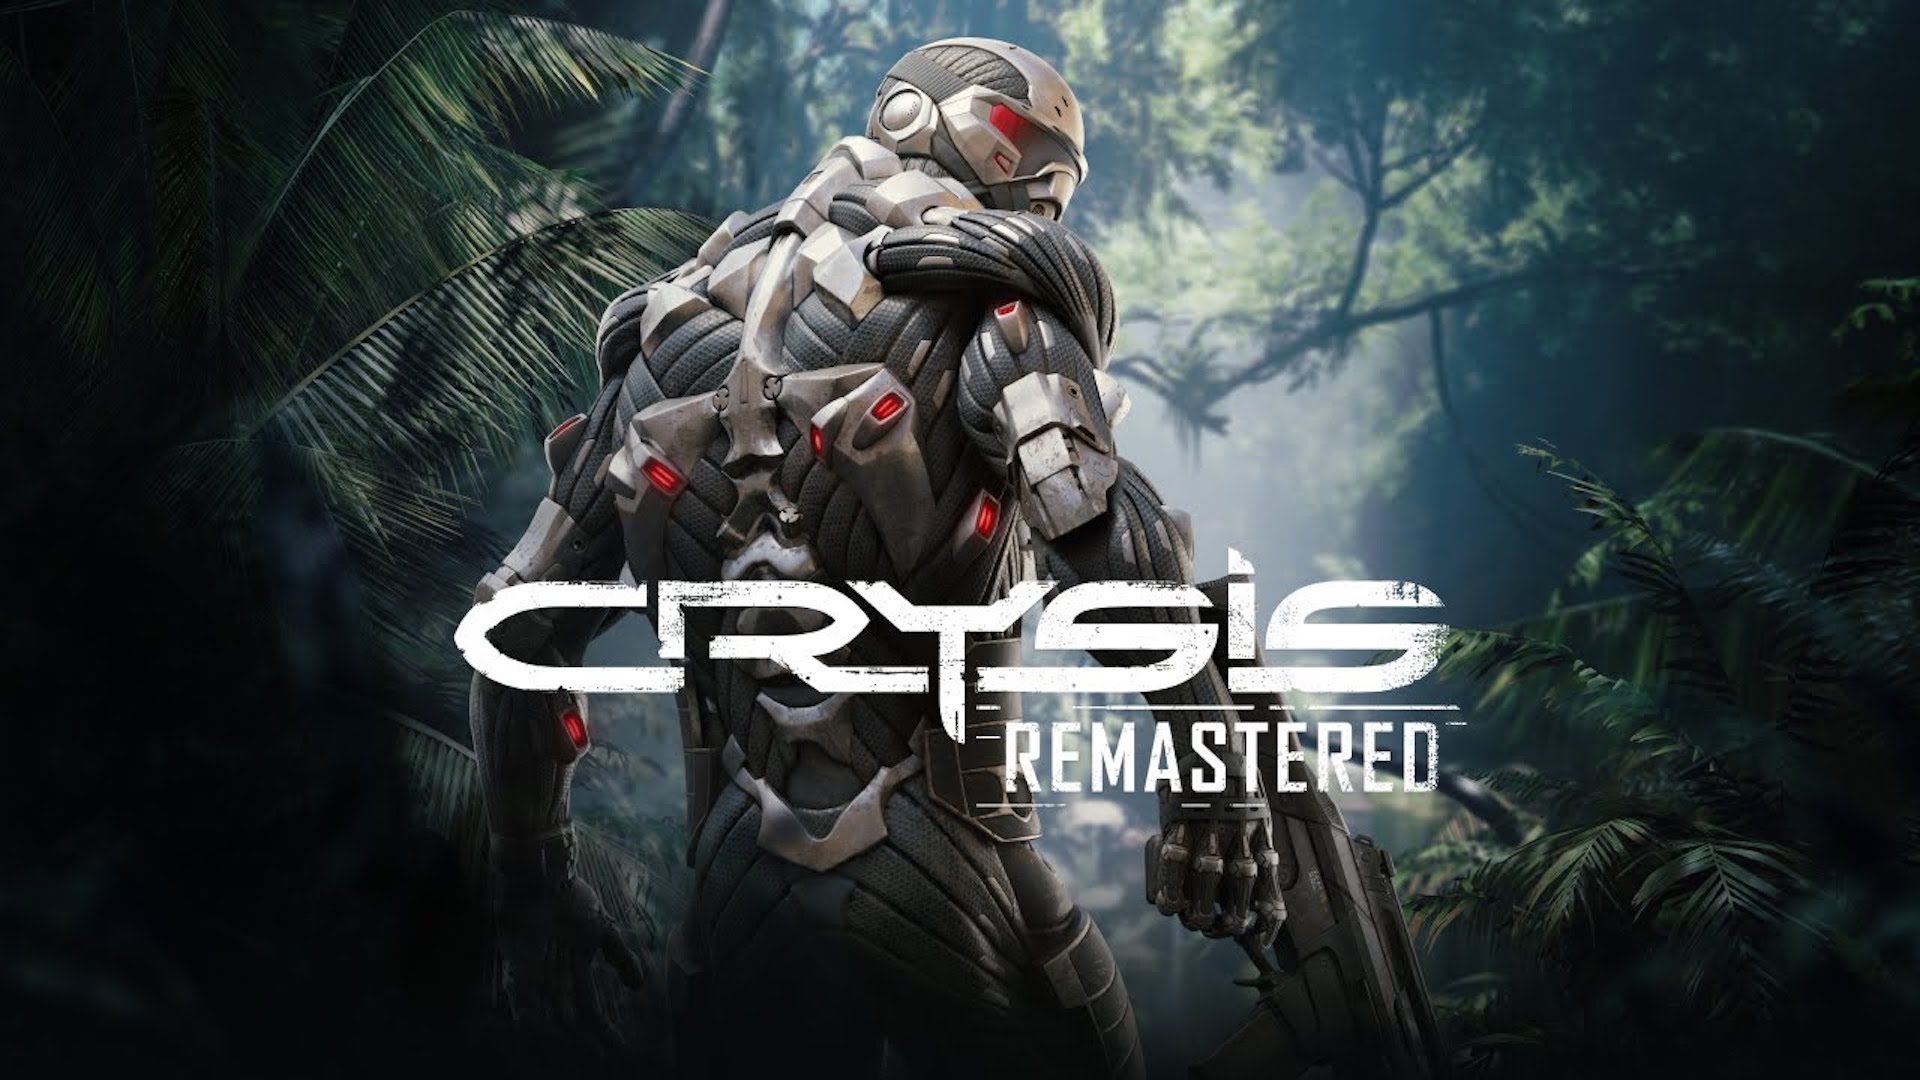 ຄຸນນະສົມບັດ Remastered Crysis "ມັນສາມາດດໍາເນີນການ Crysis ໄດ້ບໍ?" ການ​ຕັ້ງ​ຄ່າ​ຮູບ​ພາບ​ໃນ PC